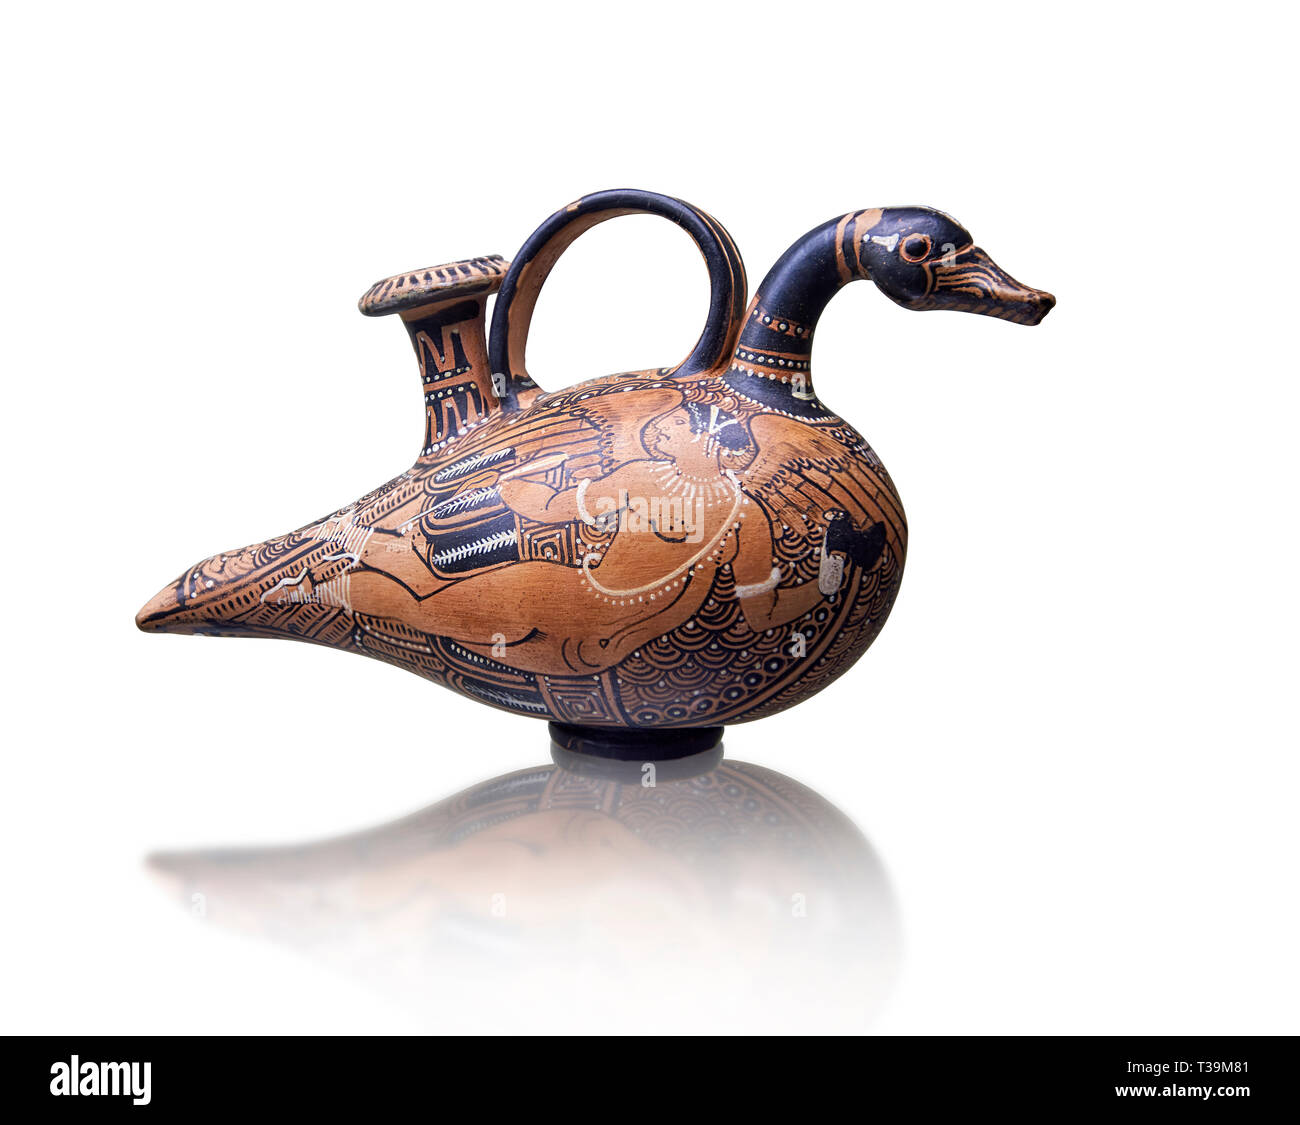 Ein 4. Jahrhundert v. Chr. etruskische Askoi, Olivenöl oder Wein Glas, in der Form einer Ente, Terrakotta mit schwarzer Farbe dargestellt, inv 4233, nationale Archaeolo Stockfoto